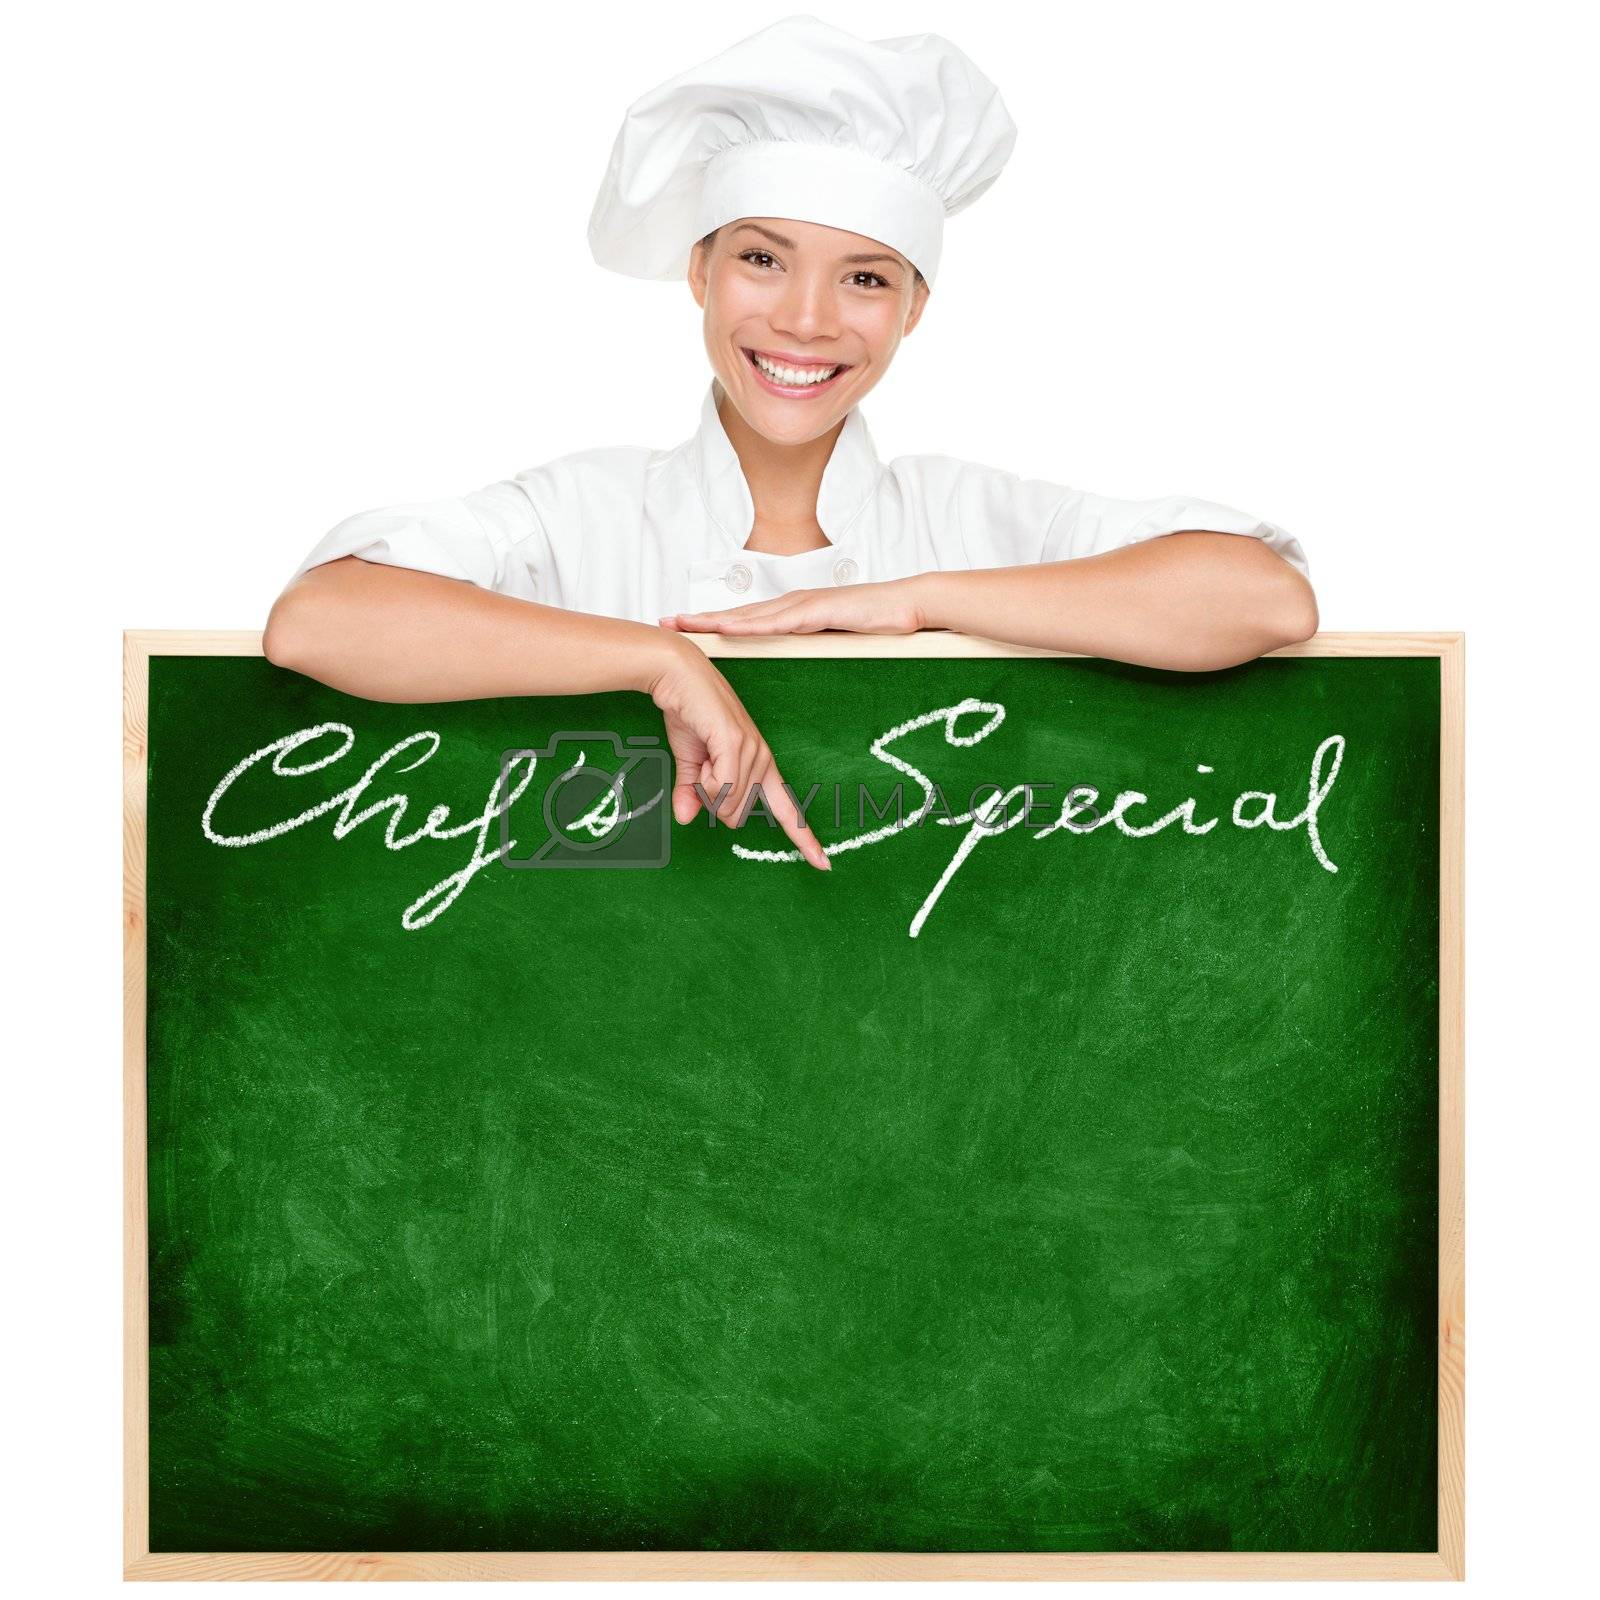 Royalty free image of Chef menu sign by Maridav